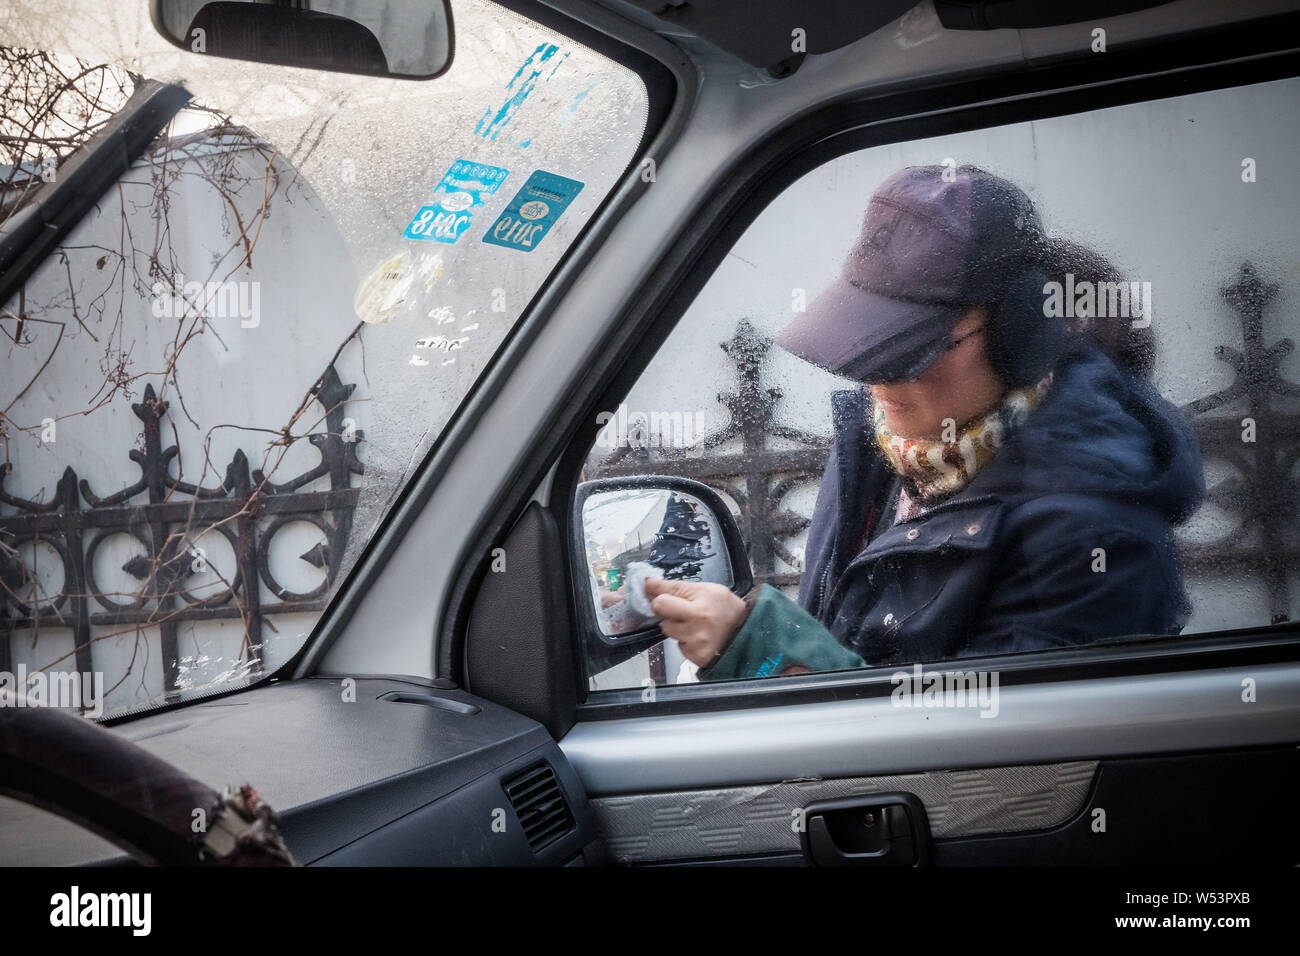 Chinesischen Führer Hundetrainer Wang Xin, die mit einem Doktorat in Psychologie an einer Universität in Japan studiert, entfernt den Frosch auf den Spiegel Ihres Autos Stockfoto